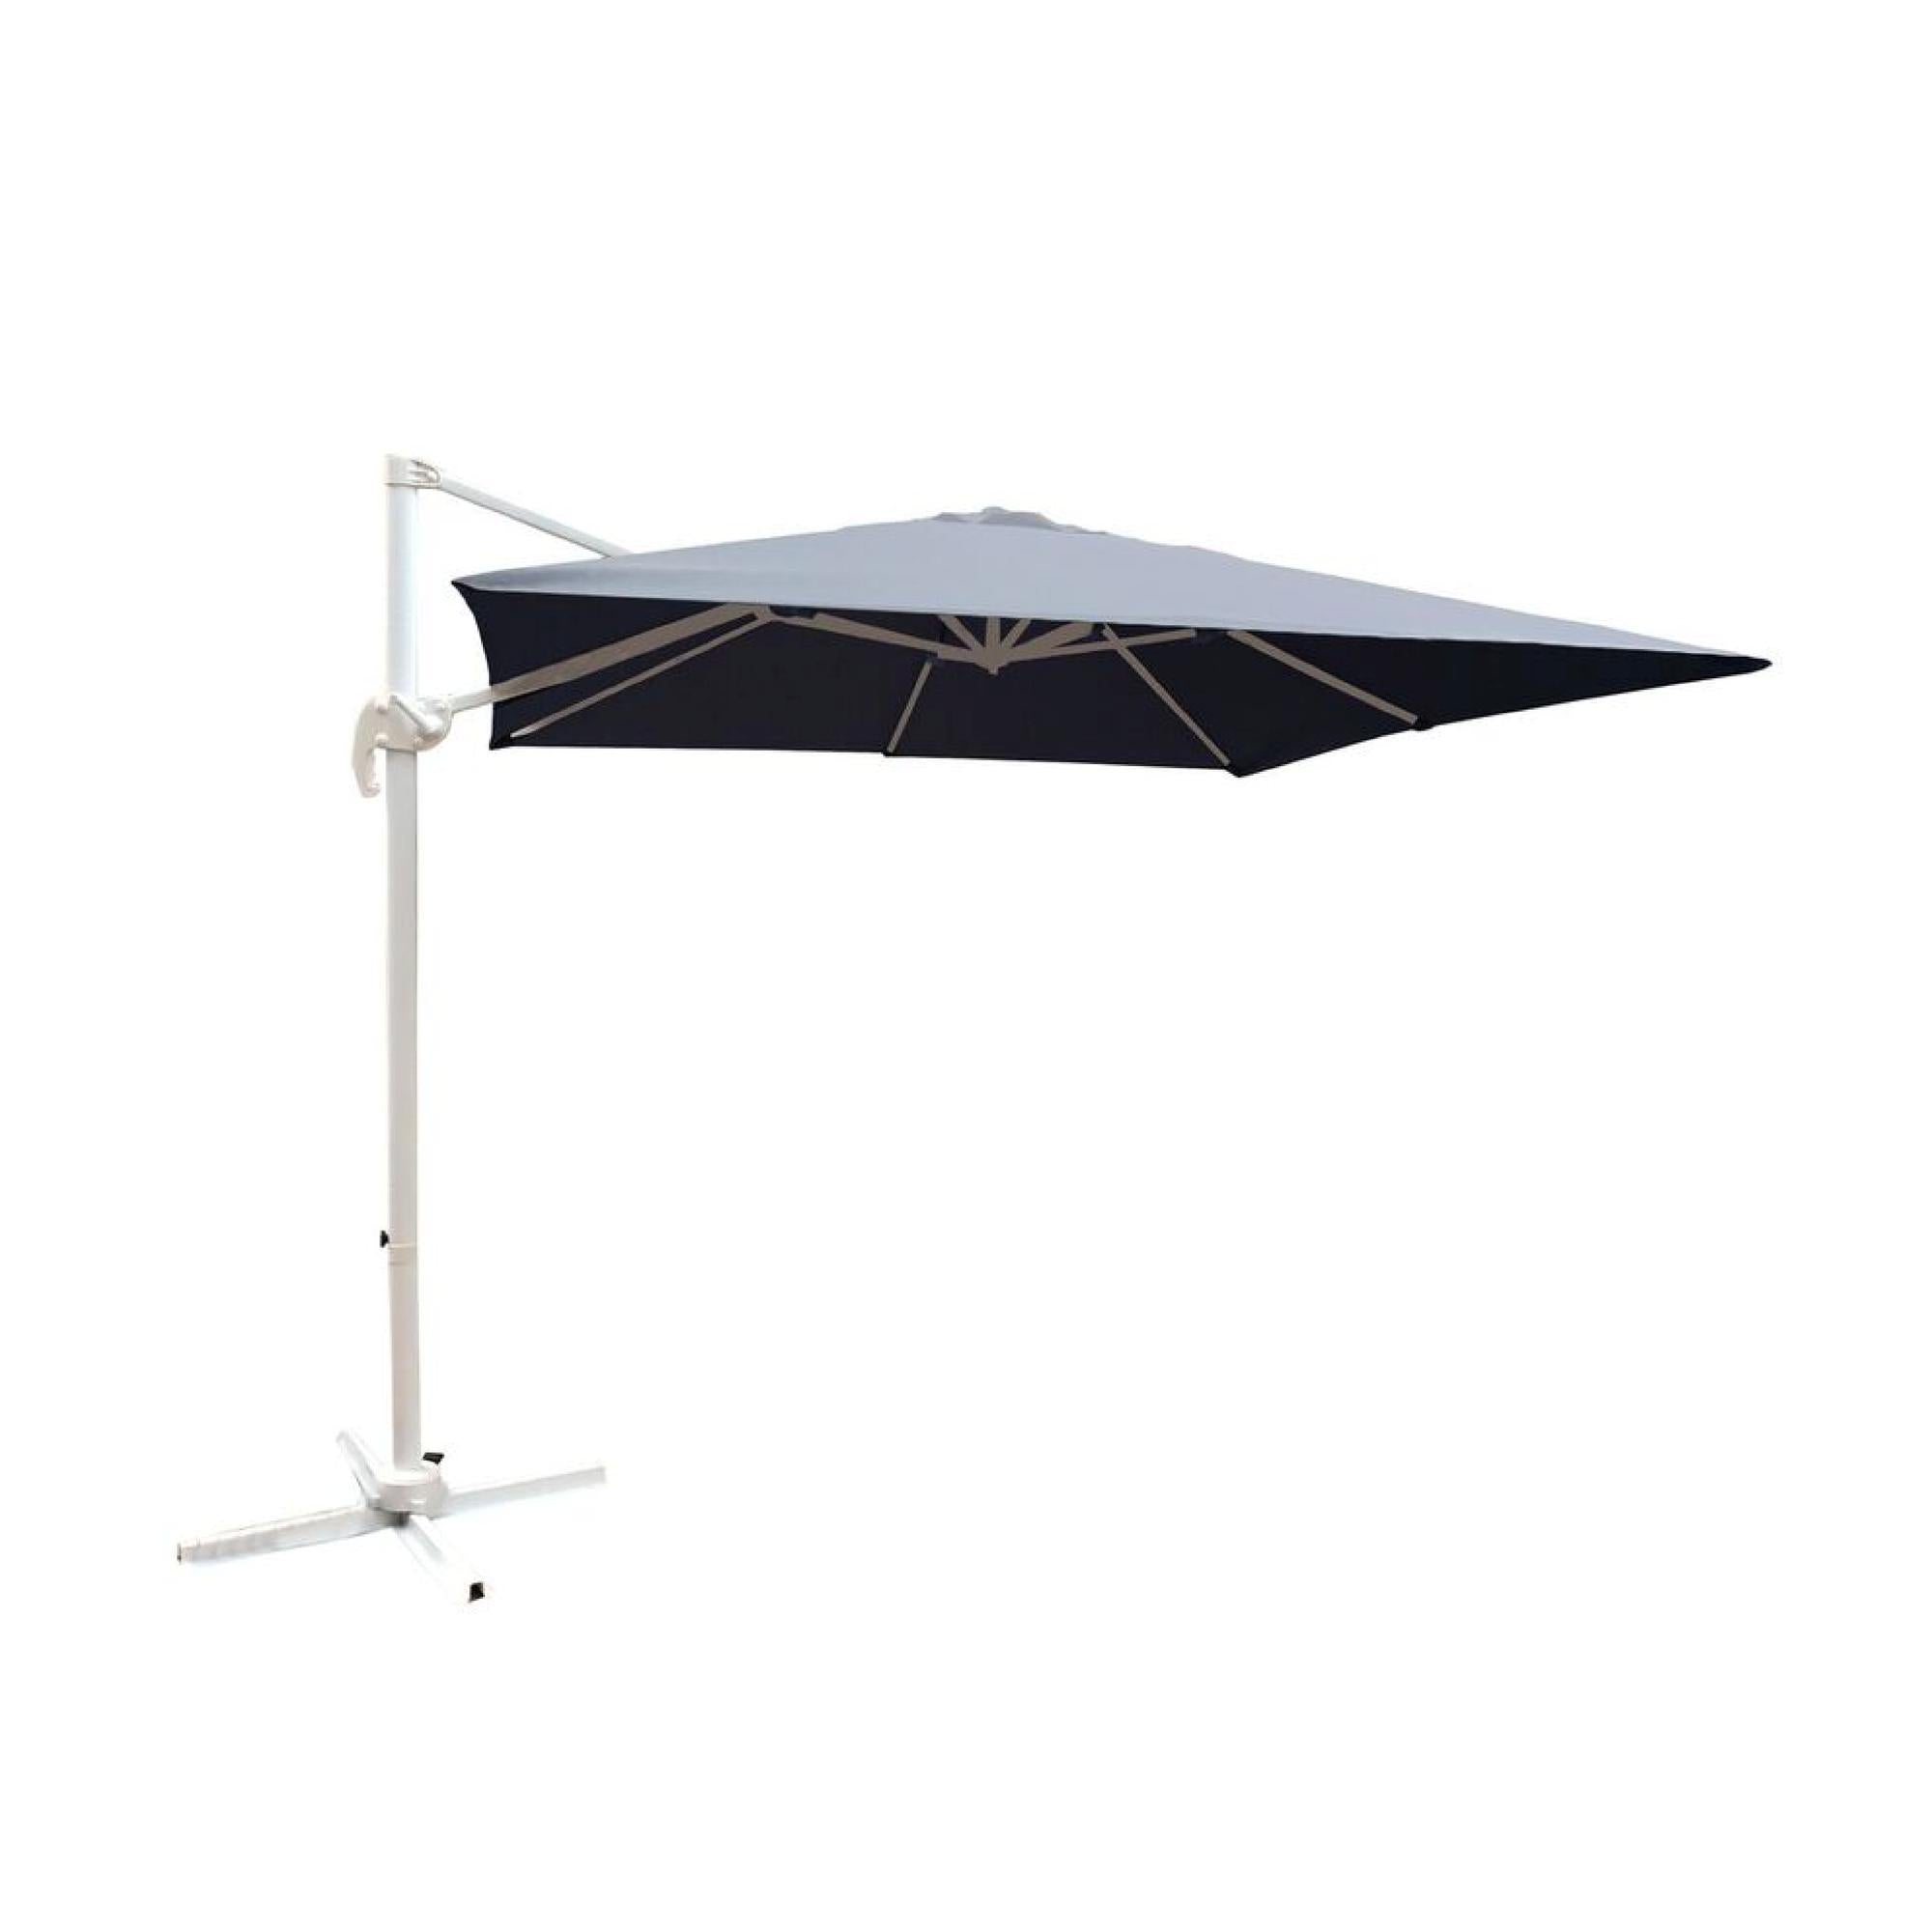 LEEDS Frihängande parasoll 350 cm - Grå | Utemöbler